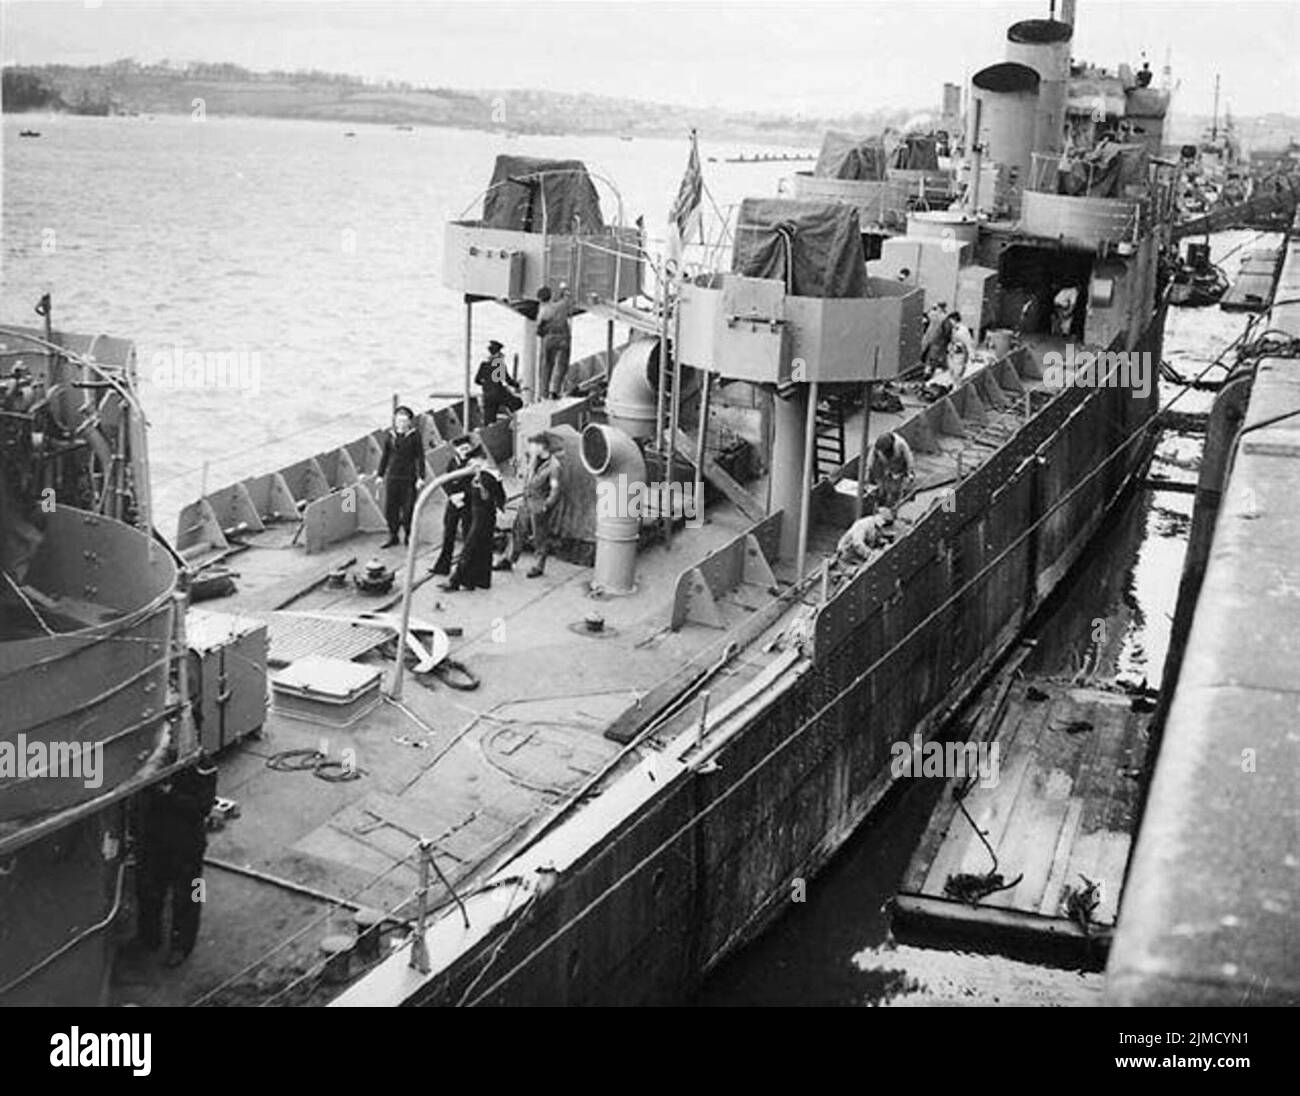 HMS Campbeltown wird für die Razzia umgebaut. Es gibt zwei Reihen von Panzerplatten auf jeder Seite des Schiffes und der Oerlikon-Befestigungen. Zwei ihrer Trichter wurden entfernt, die übrigen beiden wurden schräg geschnitten. Stockfoto